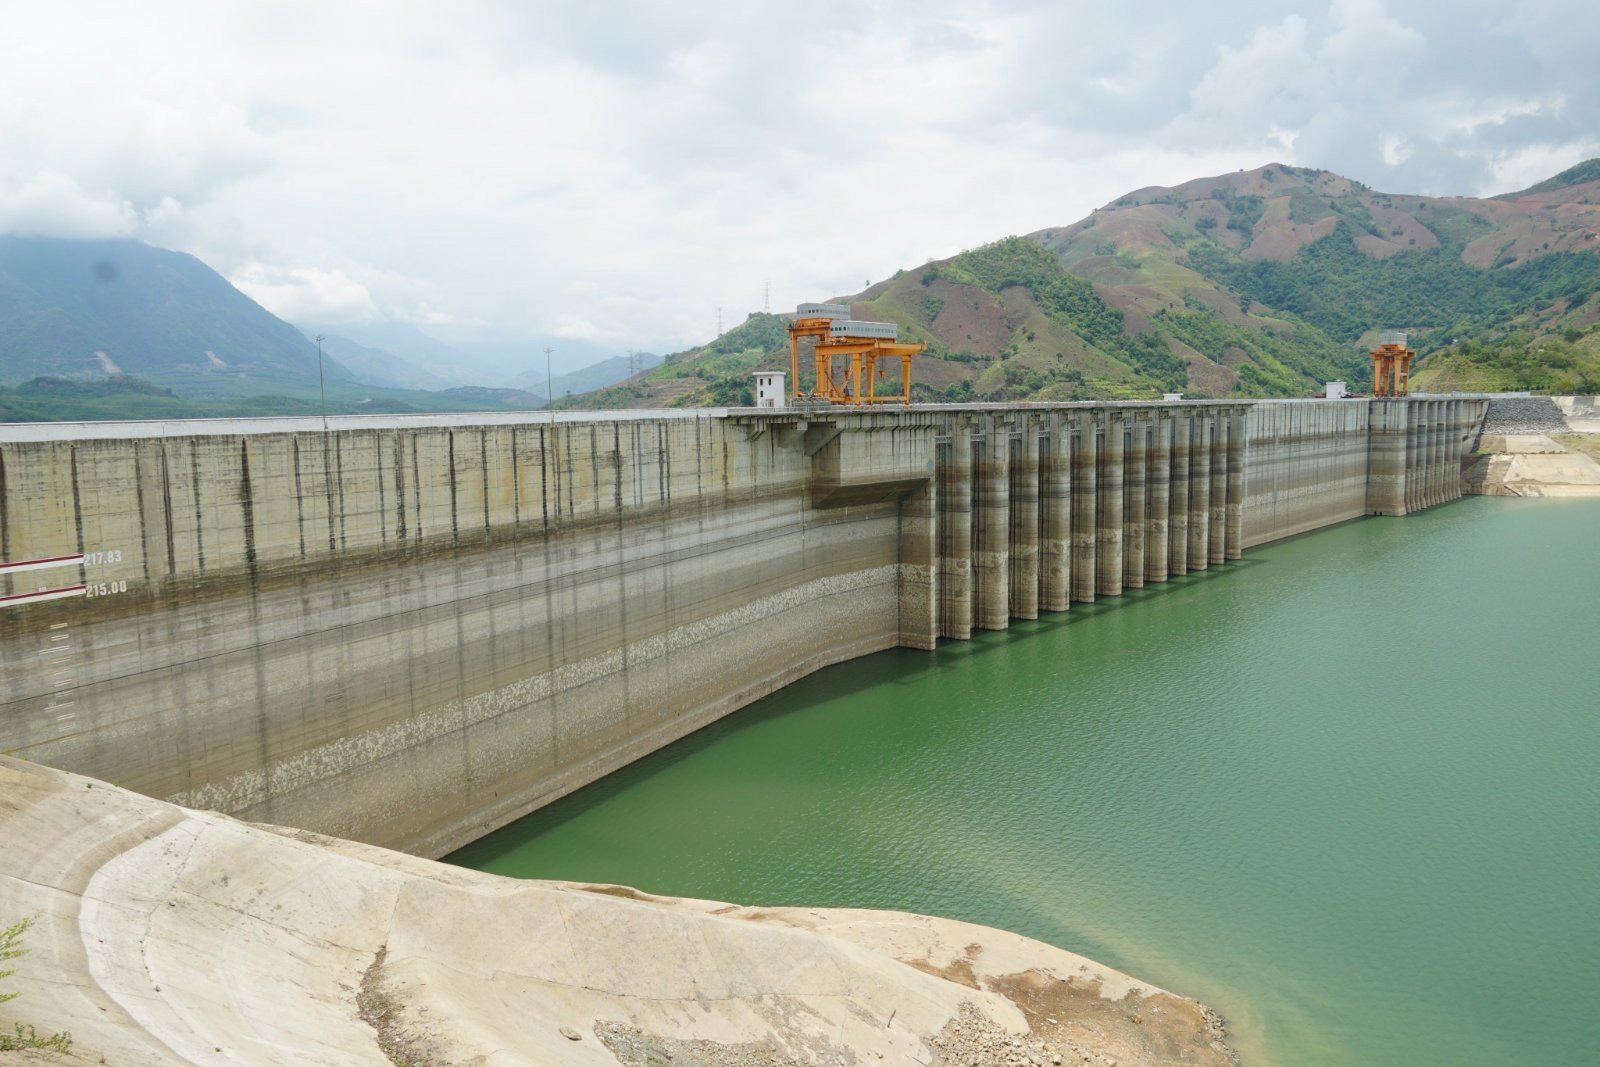 Nhà máy Thủy điện Sơn La - Thủy điện lớn nhất Đông Nam Á với tổng công suất 2.400MW đang đối mặt với tình trạng khô hạn chưa từng có. Ngày 8/6/2023, mực nước trong hồ thủy điện Sơn La ghi nhận ở mức 175,21m, trên mực nước chết 0,21m. Nguồn ảnh EVN